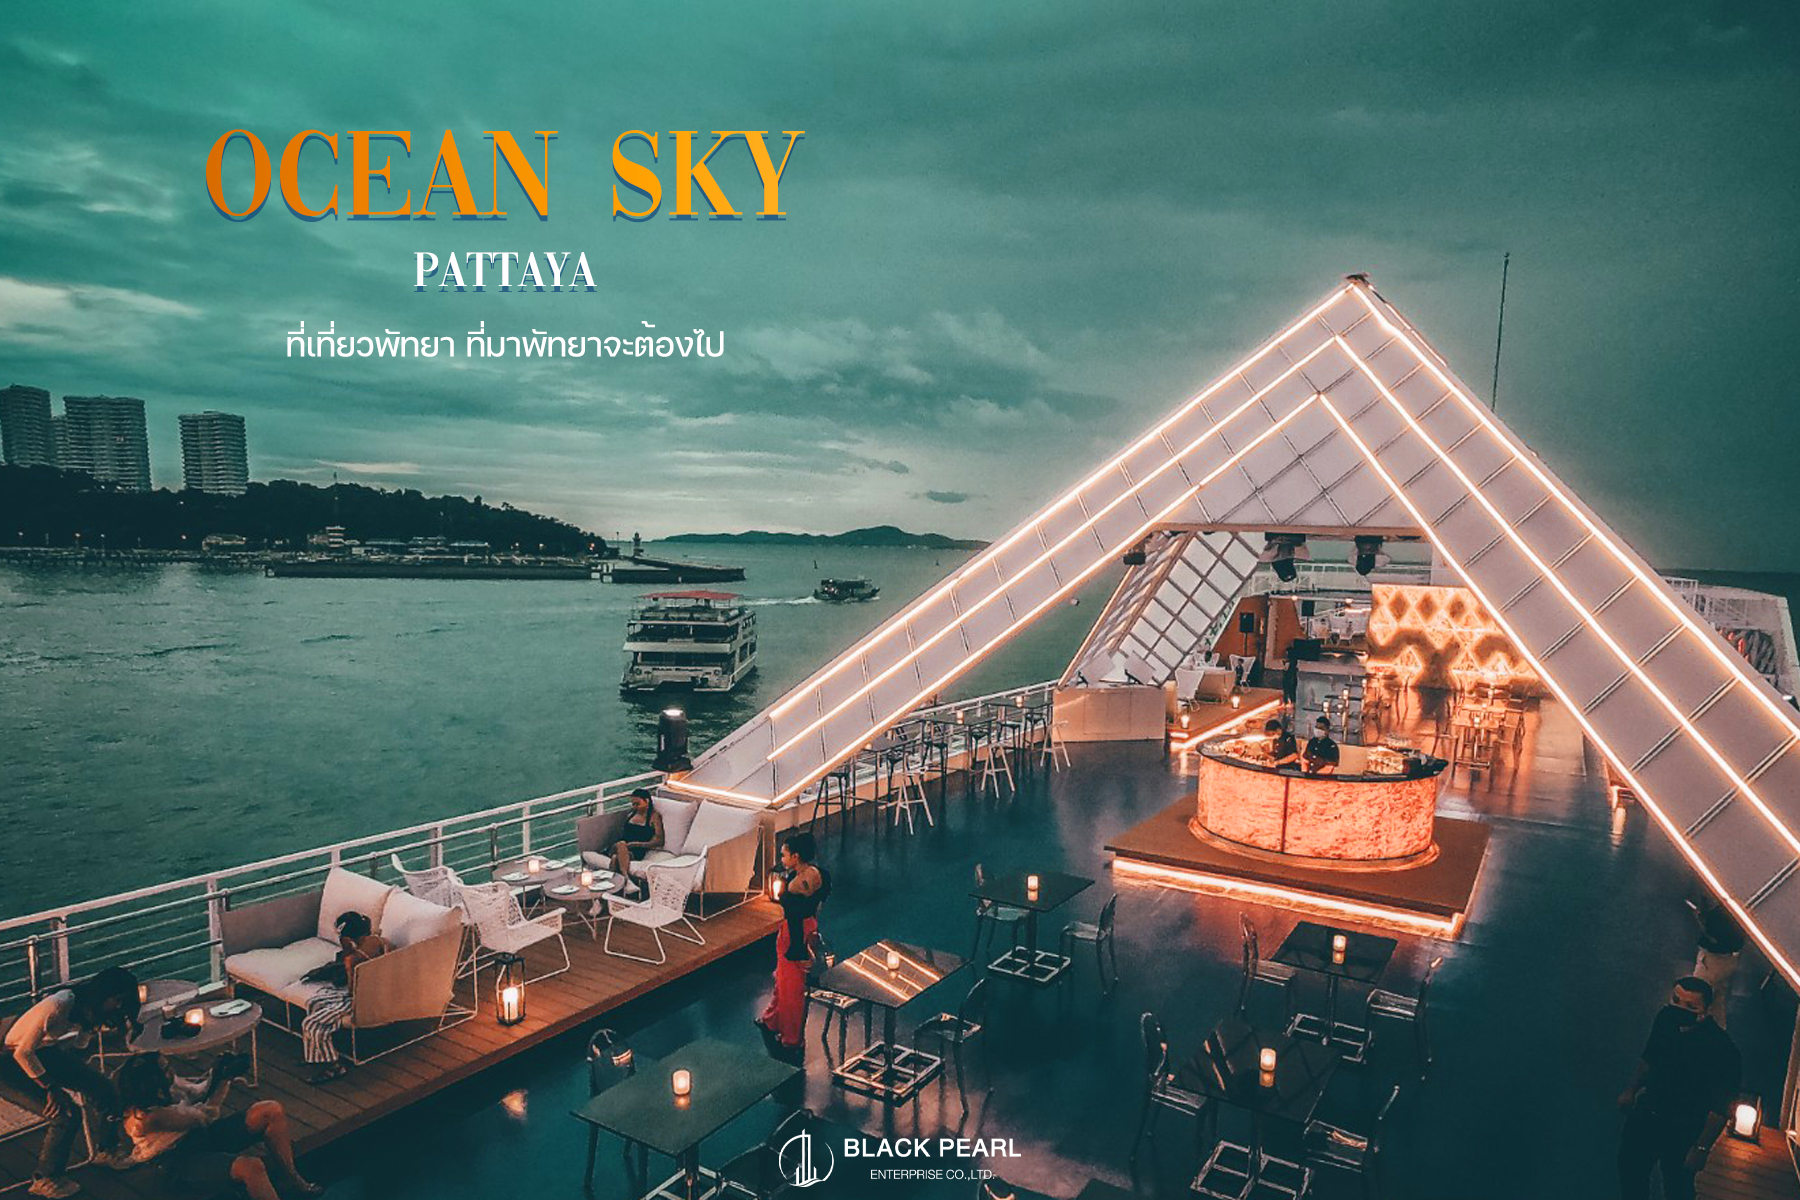 Ocean Sky Pattaya แลนด์มาร์คแห่งใหม่ ที่รวม Rooftop Bar และ คาเฟ่ตกหมึก